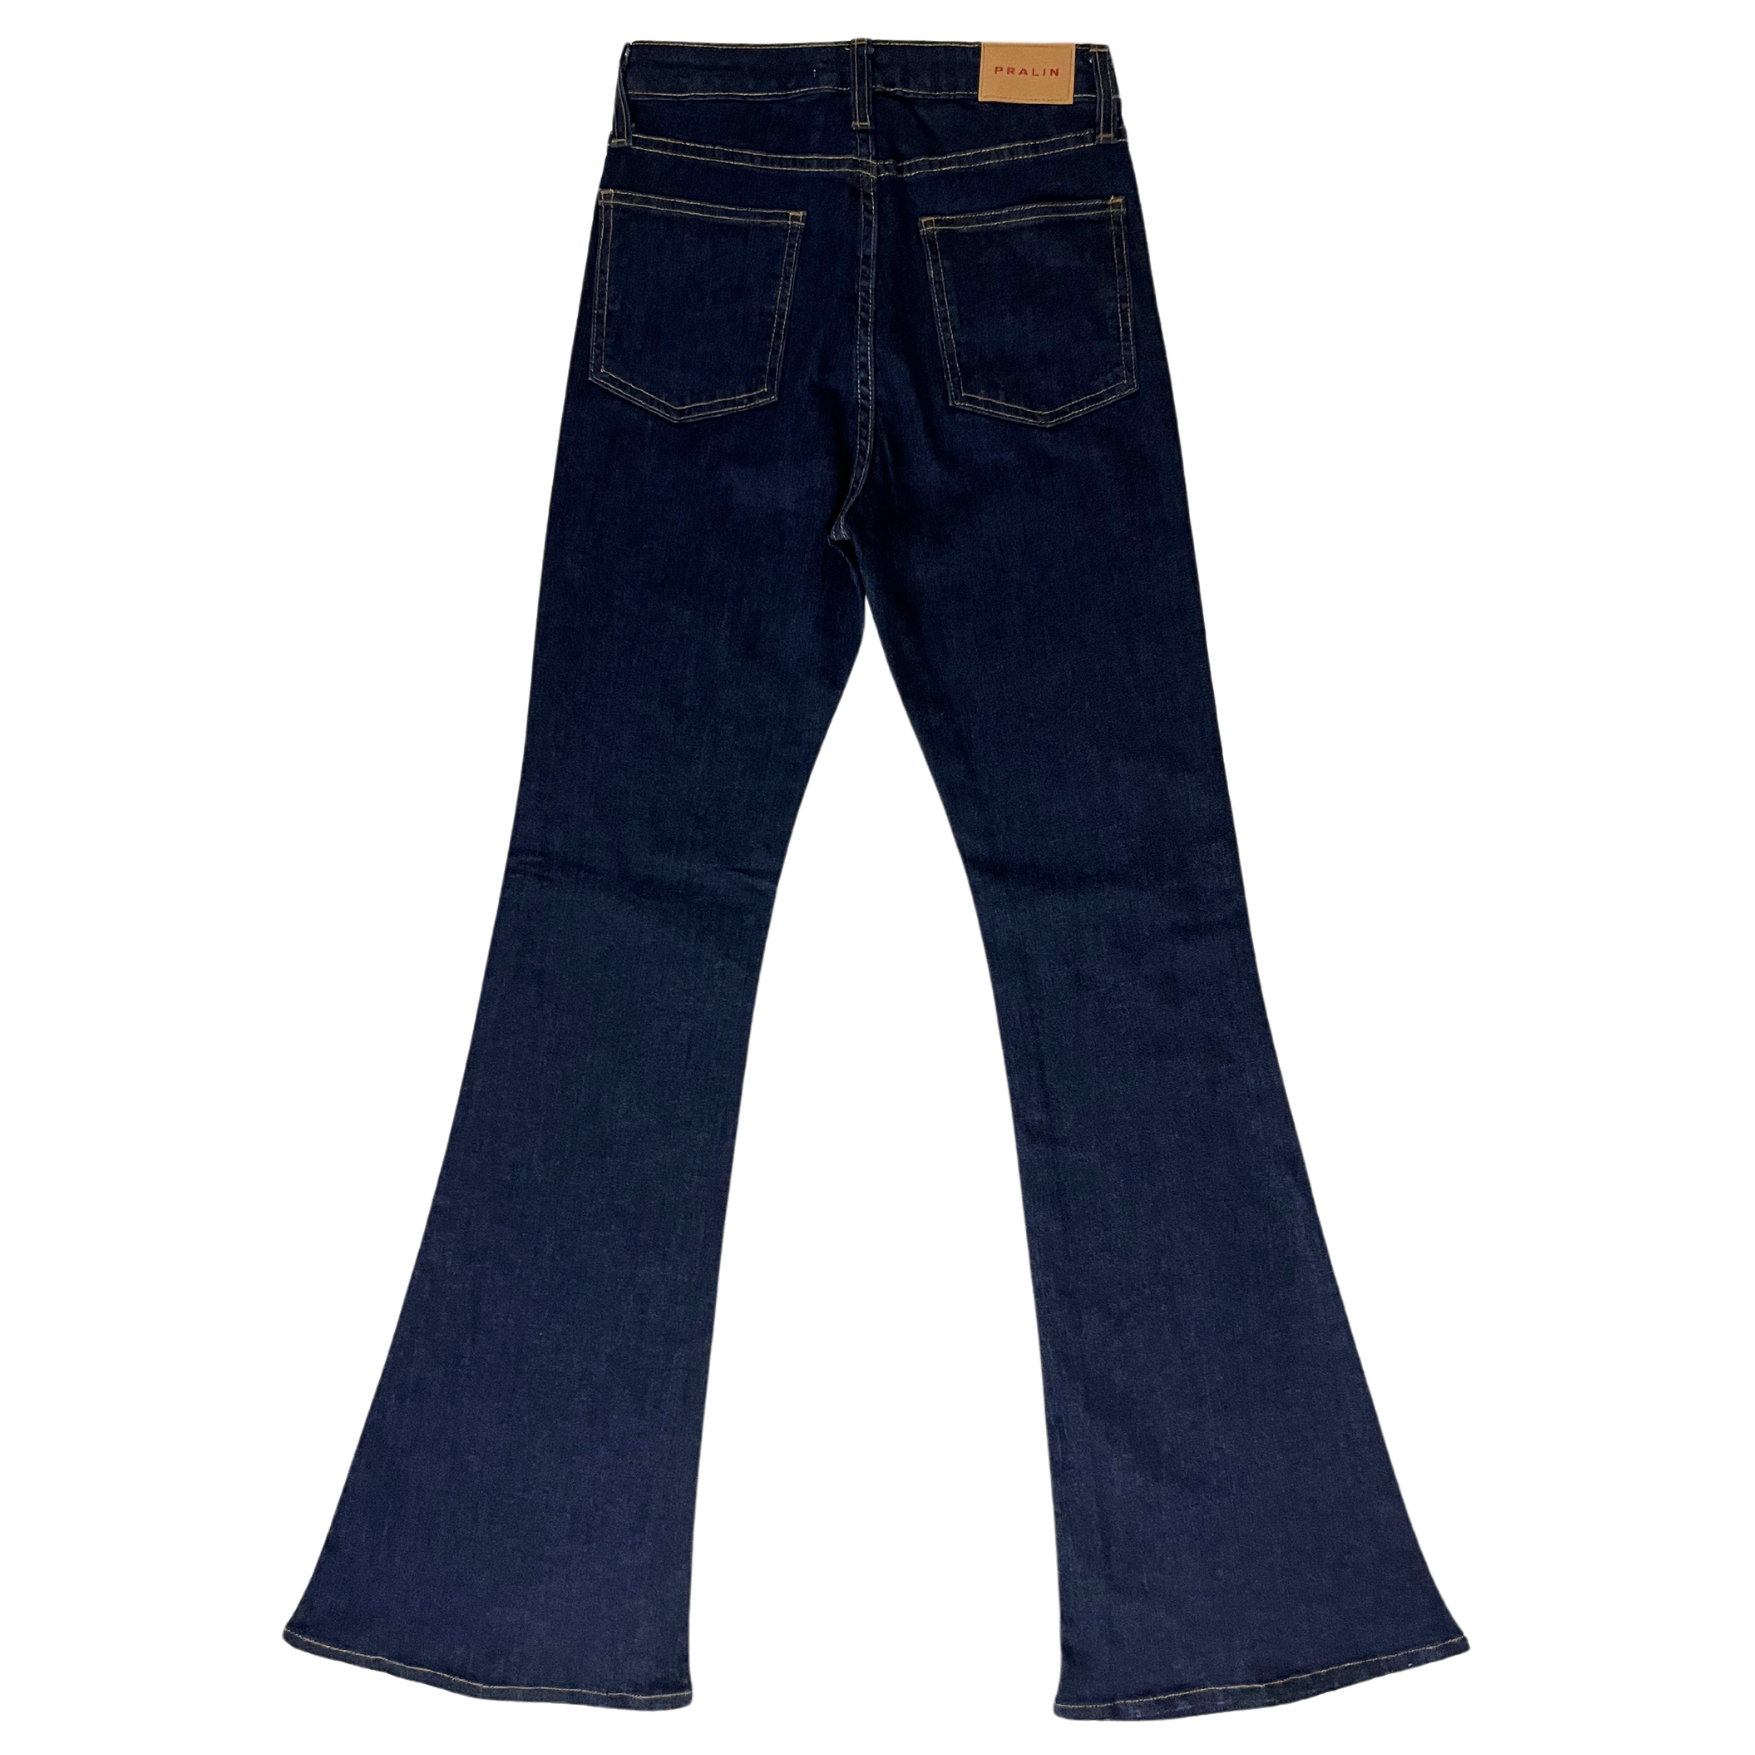 Jeans Acampanados Azul Oscuro Estilo Slim para Mujer